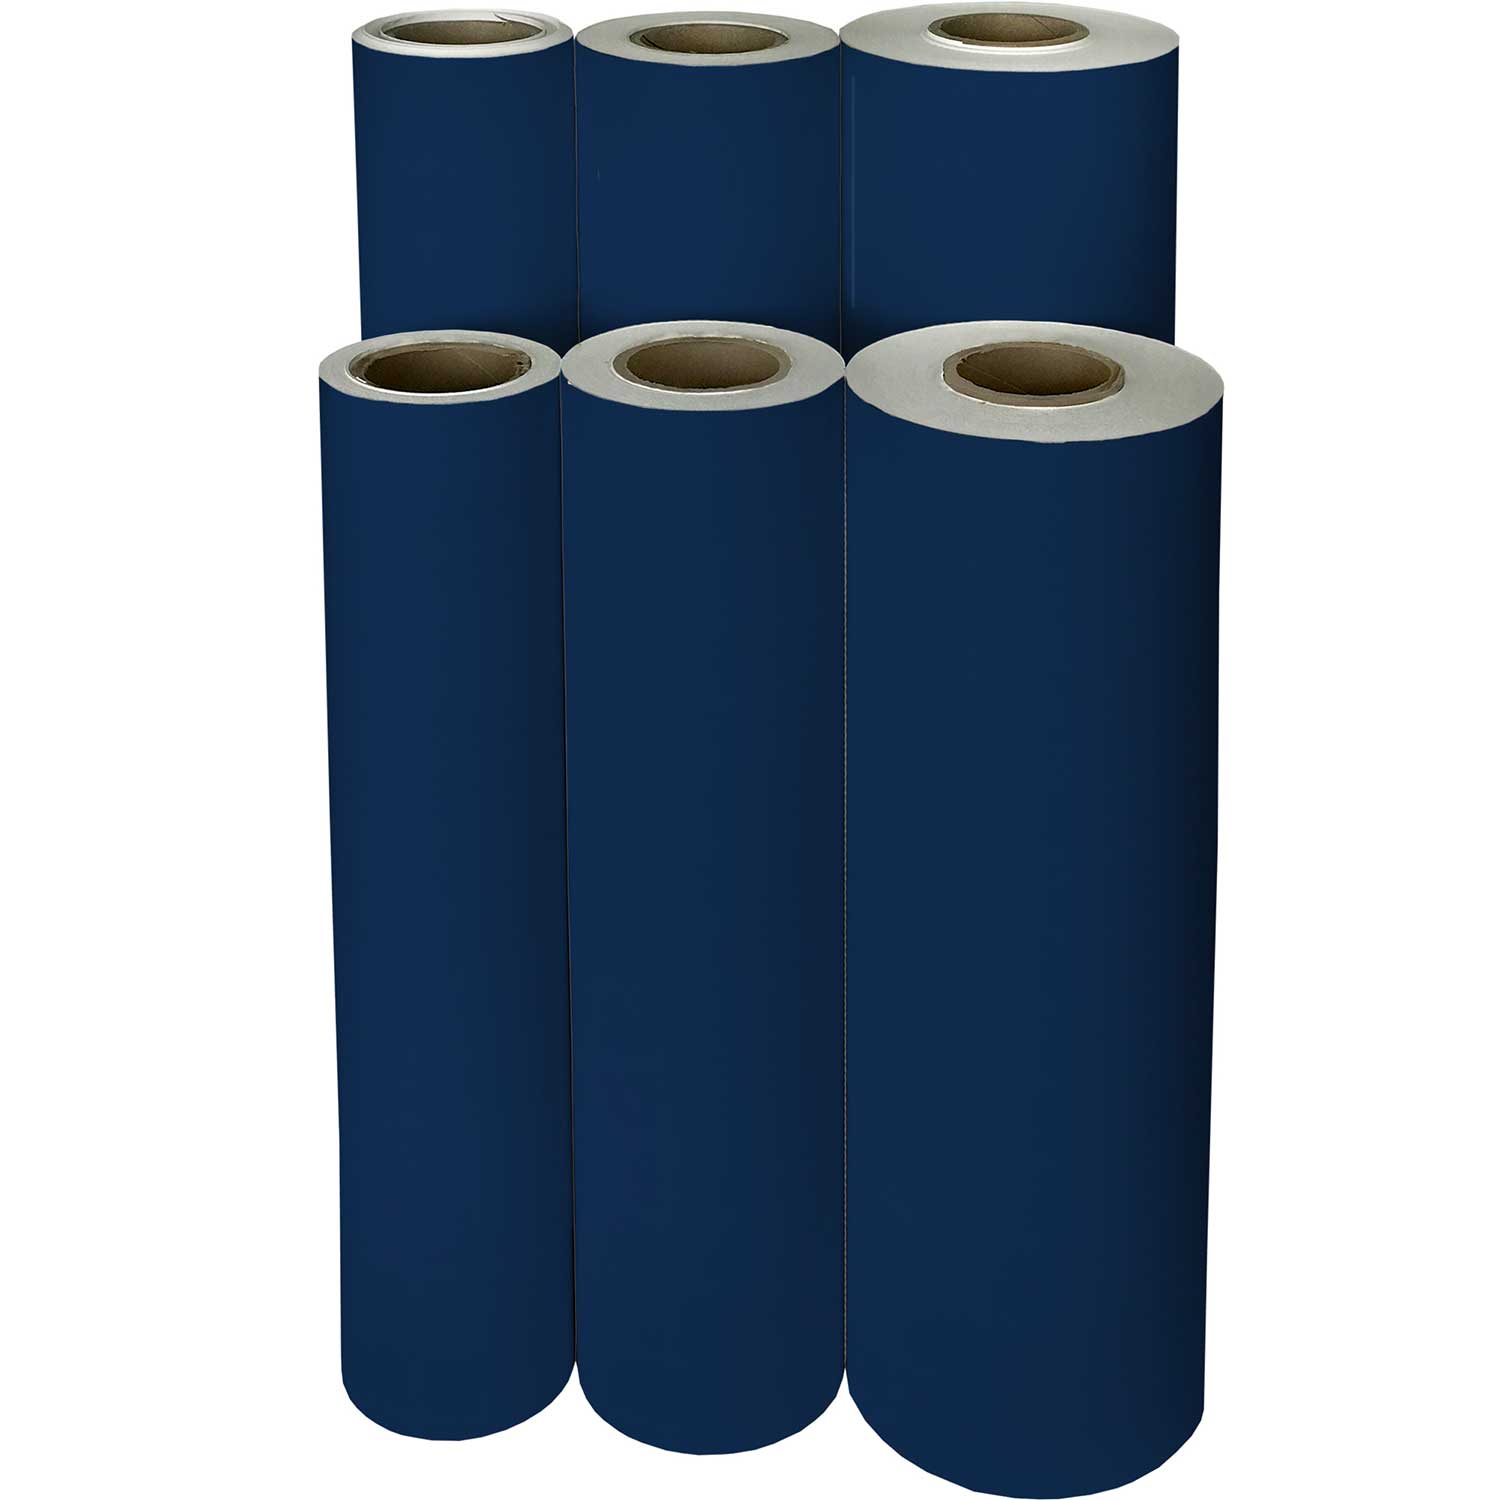 20 x 30 inch Navy Blue Tissue Paper